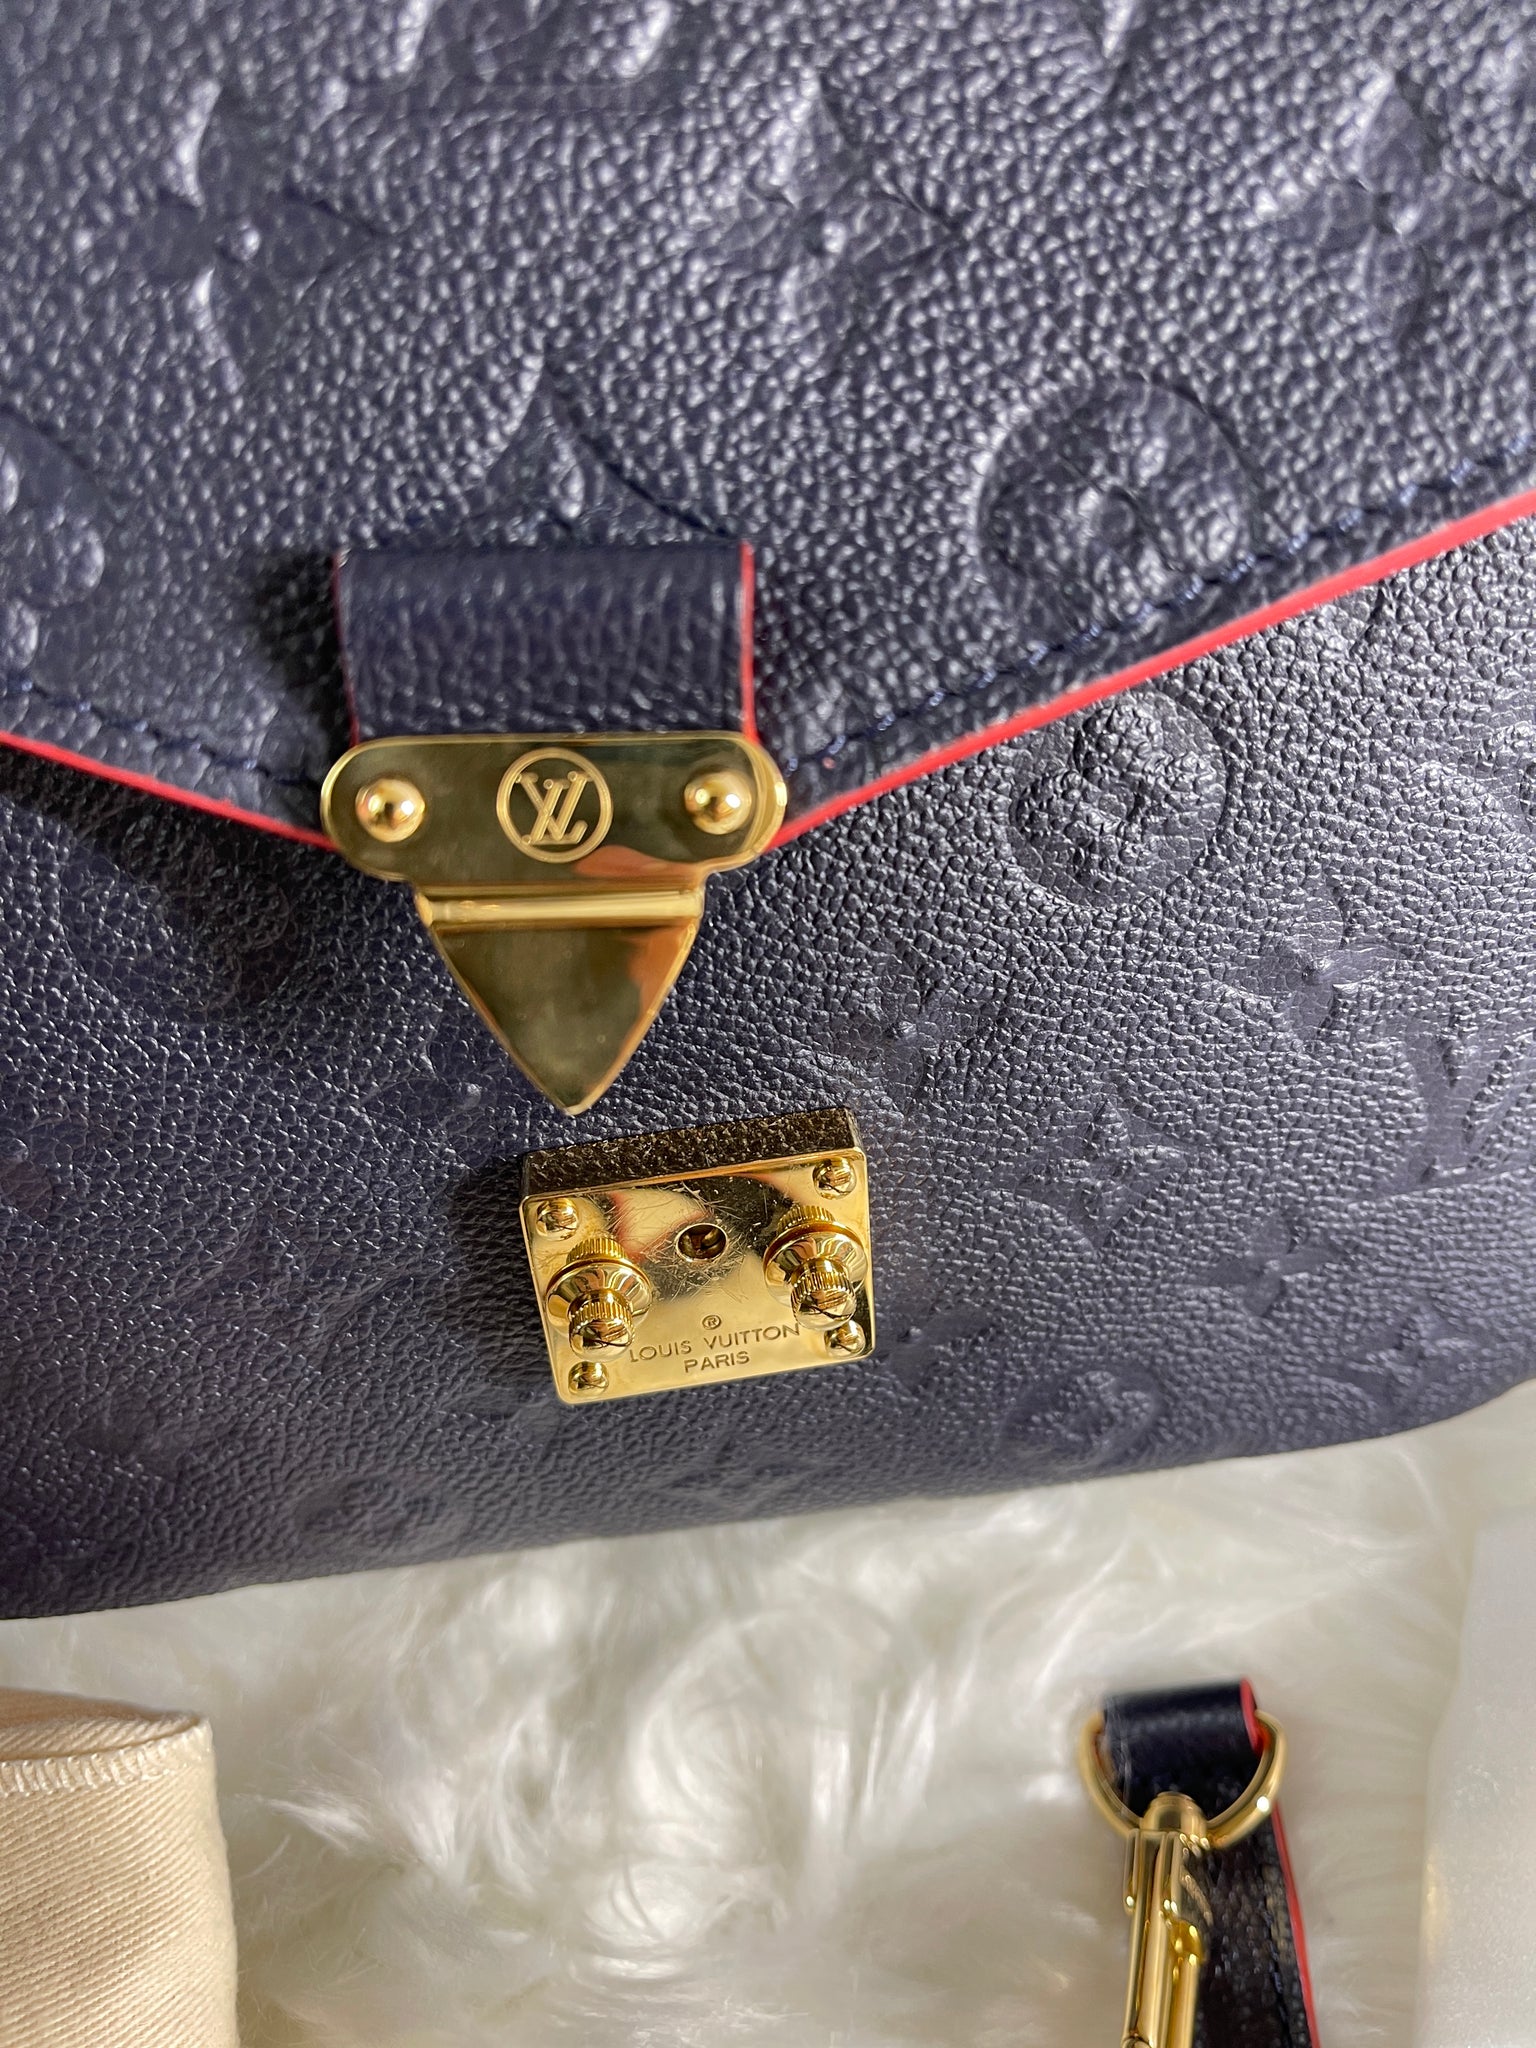 Louis Vuitton Pochette Métis Bag Blue Monogram Empreinte Leather